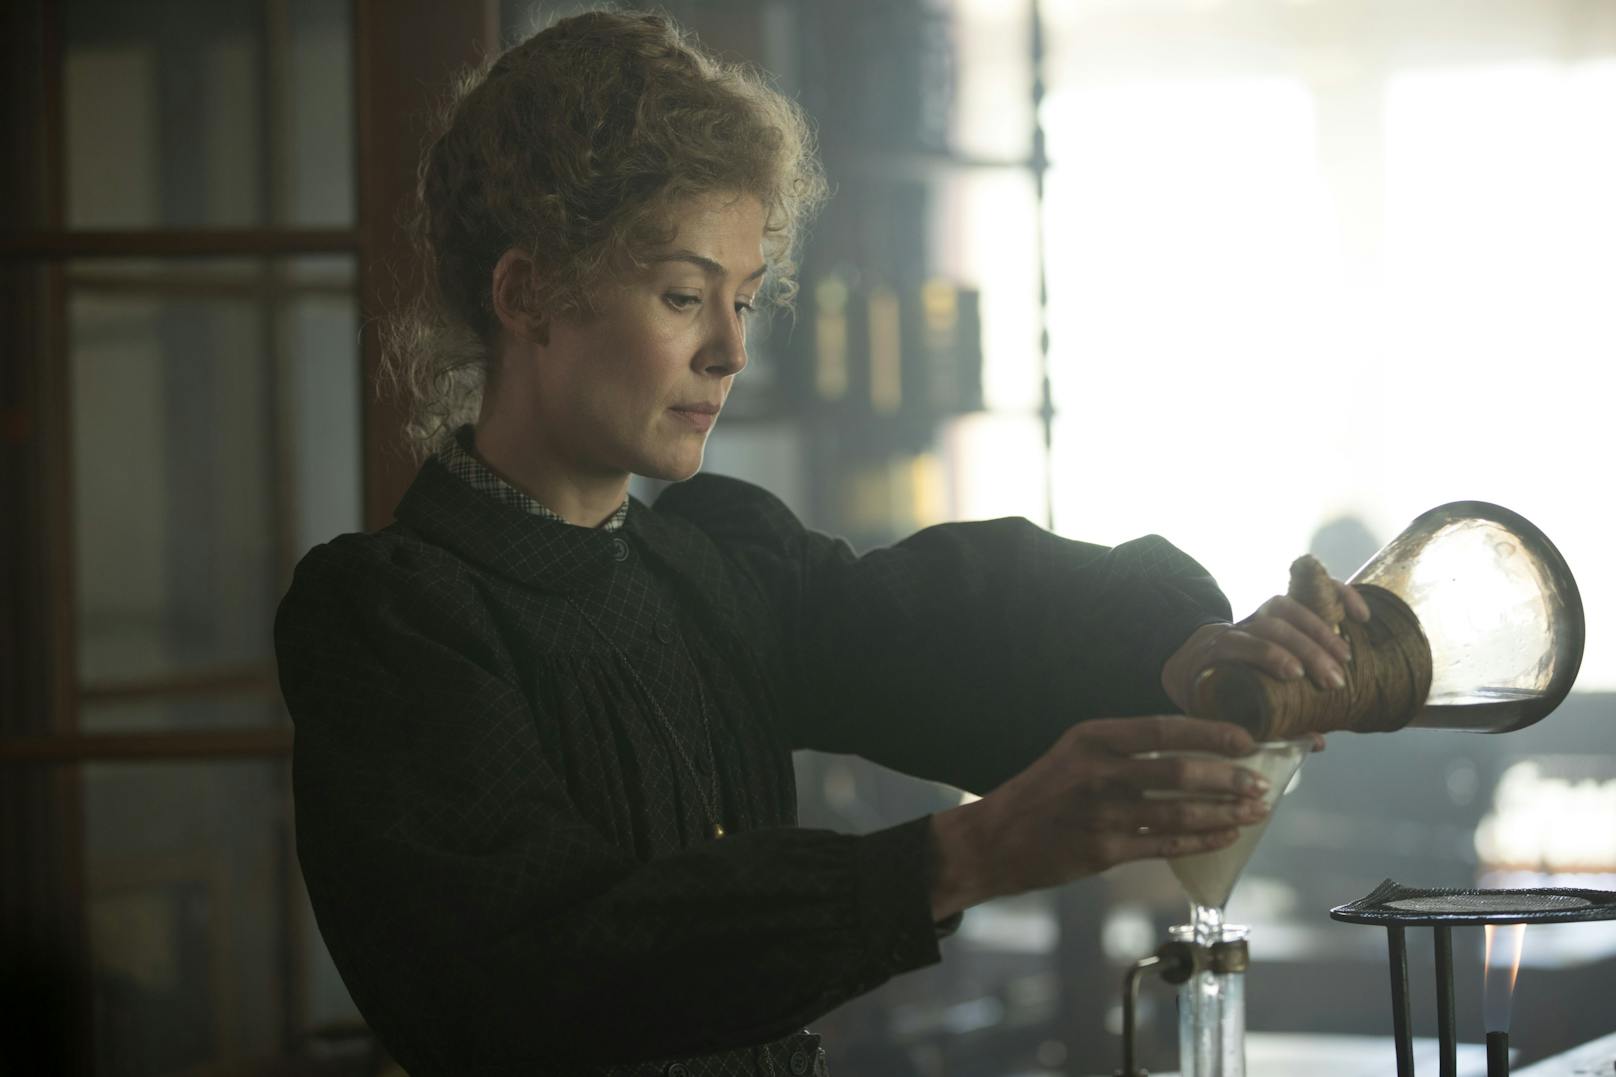 In "Marie Curie - Elemente des Lebens" spielt Hollywood-Star <strong>Rosamund Pike</strong> die Rolle einer der berühmtesten und faszinierendsten Wissenschafterinnen.